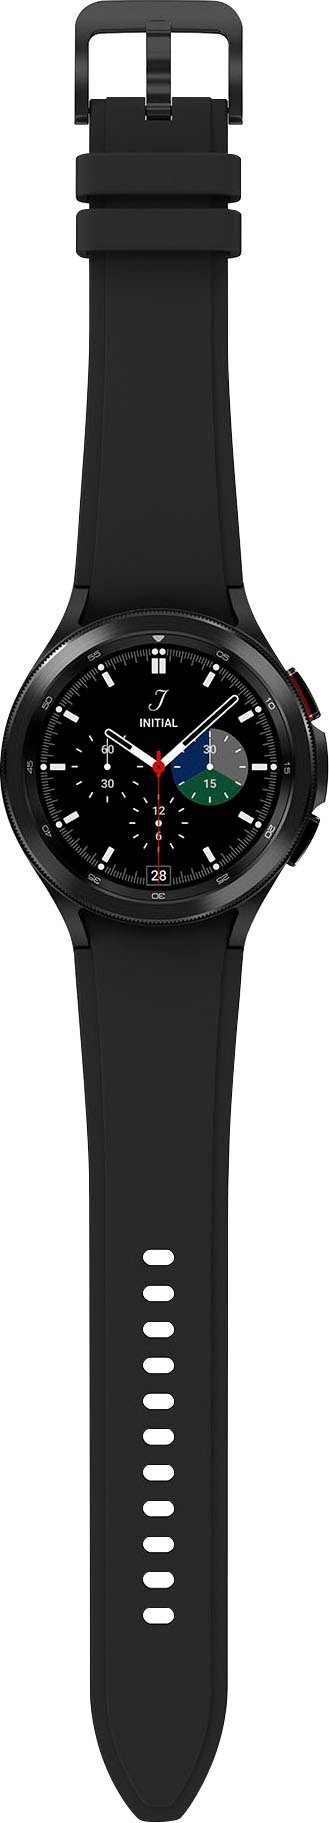 Watch (4,6 BT cm/1,4 schwarz by Google), Zoll, Smartwatch Uhr, 4 Fitness Tracker, Classic Samsung schwarz Galaxy Fitness OS | Wear Gesundheitsfunktionen